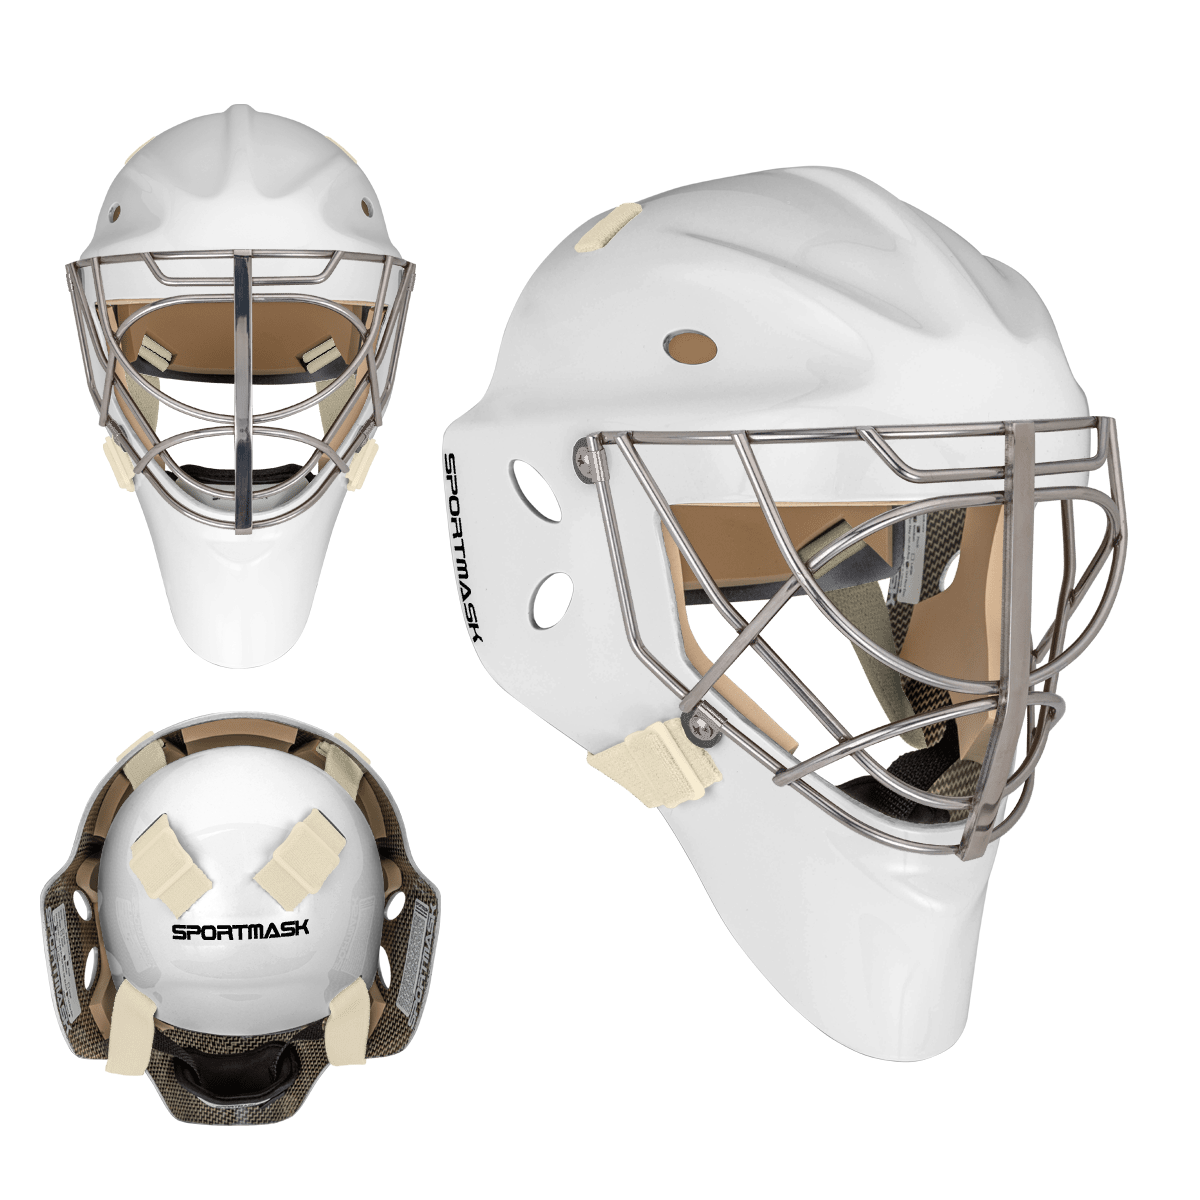 Sportmask Pro 3i Non-Certified Goalie Mask - Custom Design - Senior White/Default Inspiration